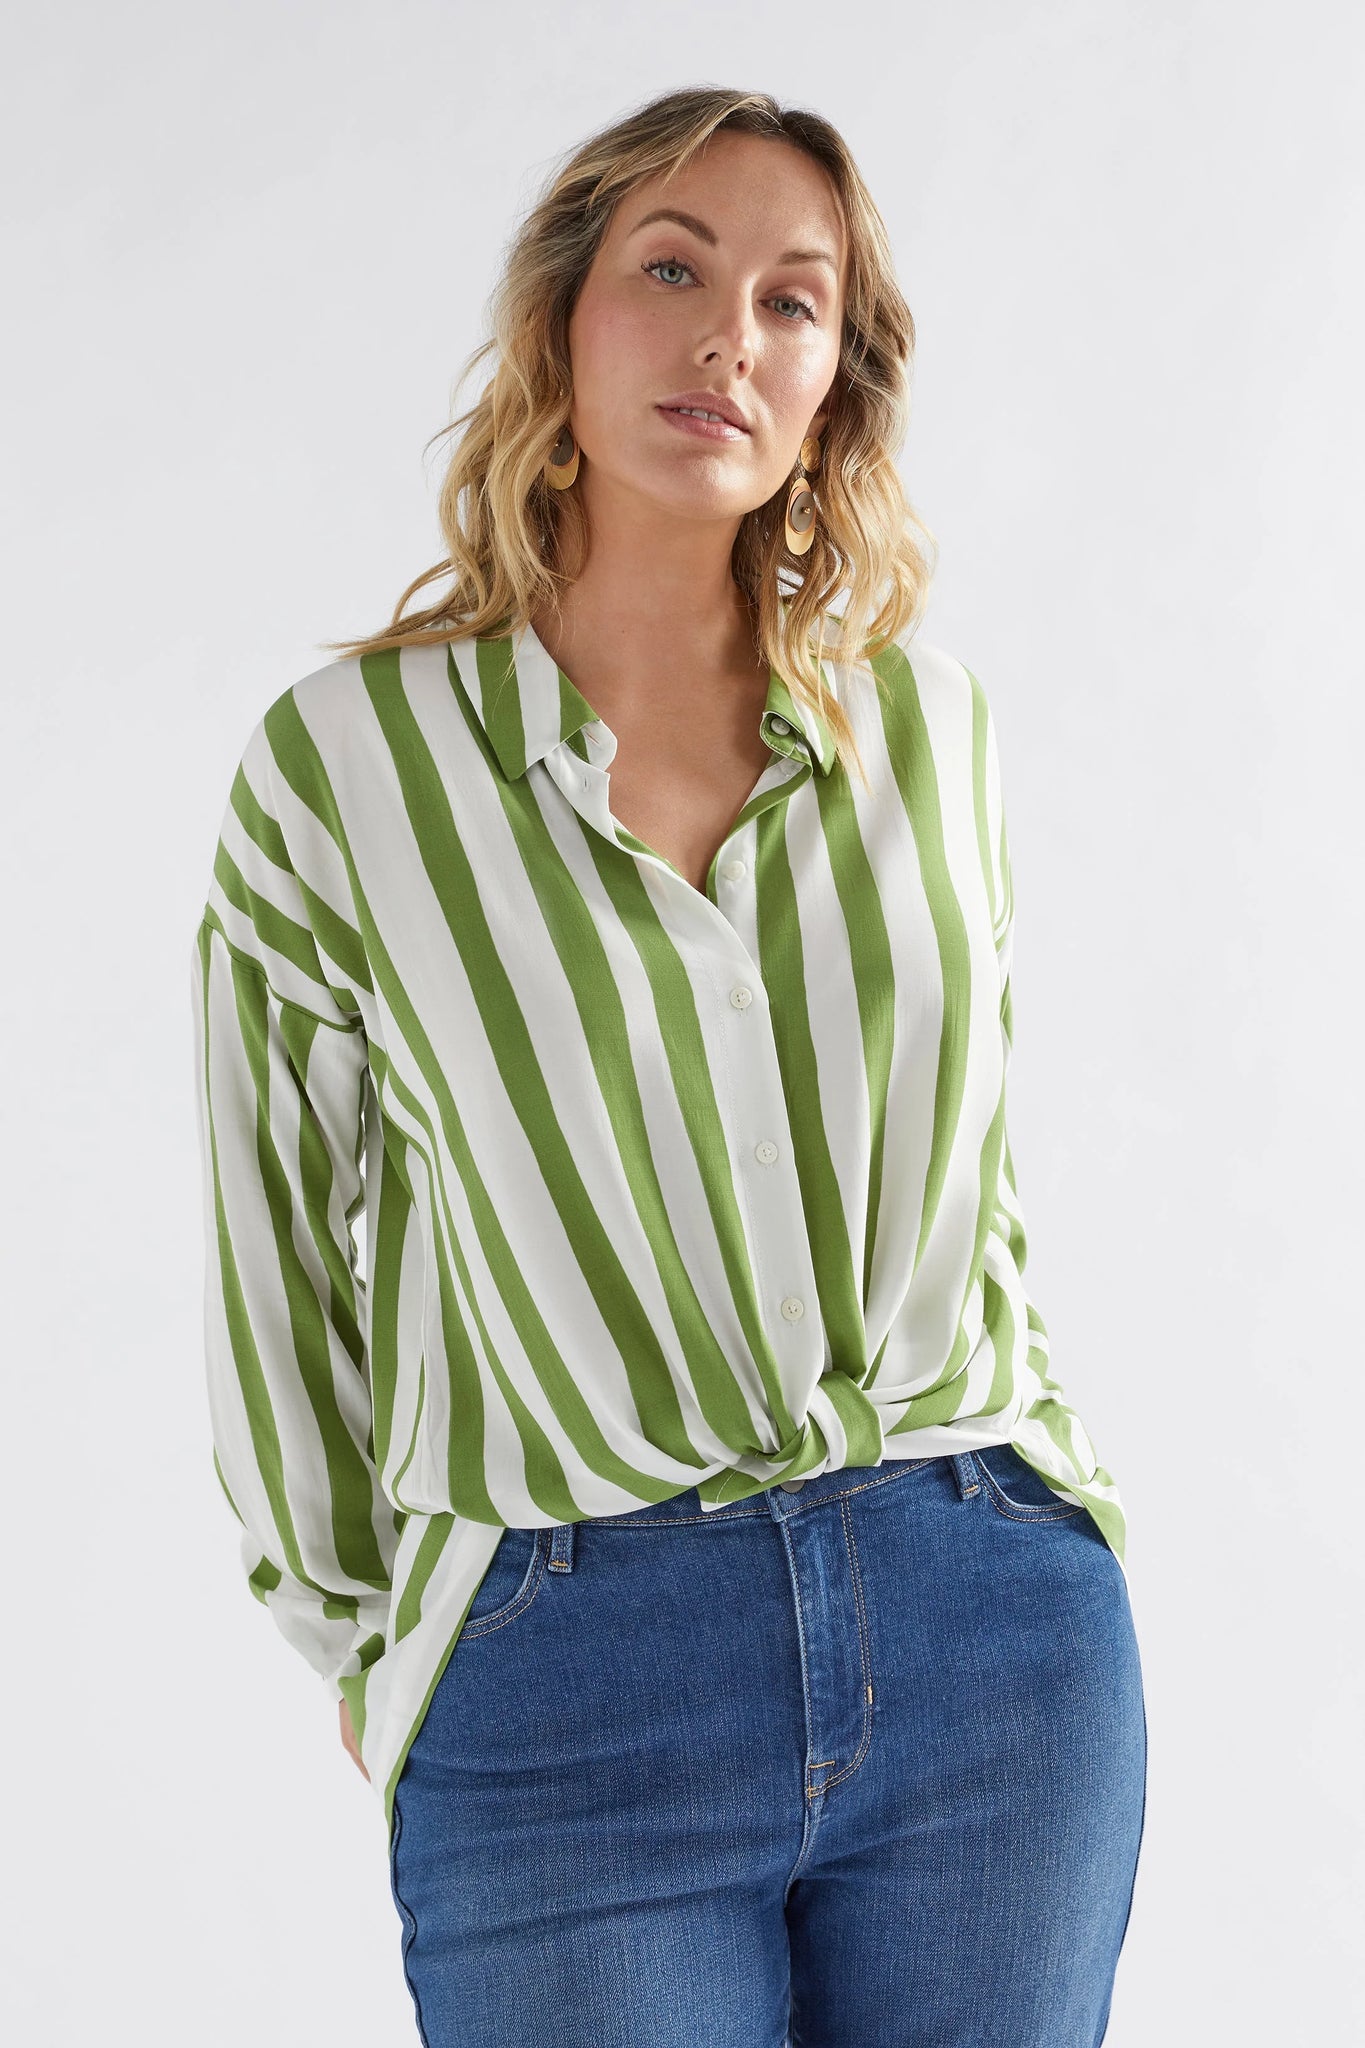 Elk Tilbe Shirt - Green and White Paint Stripe